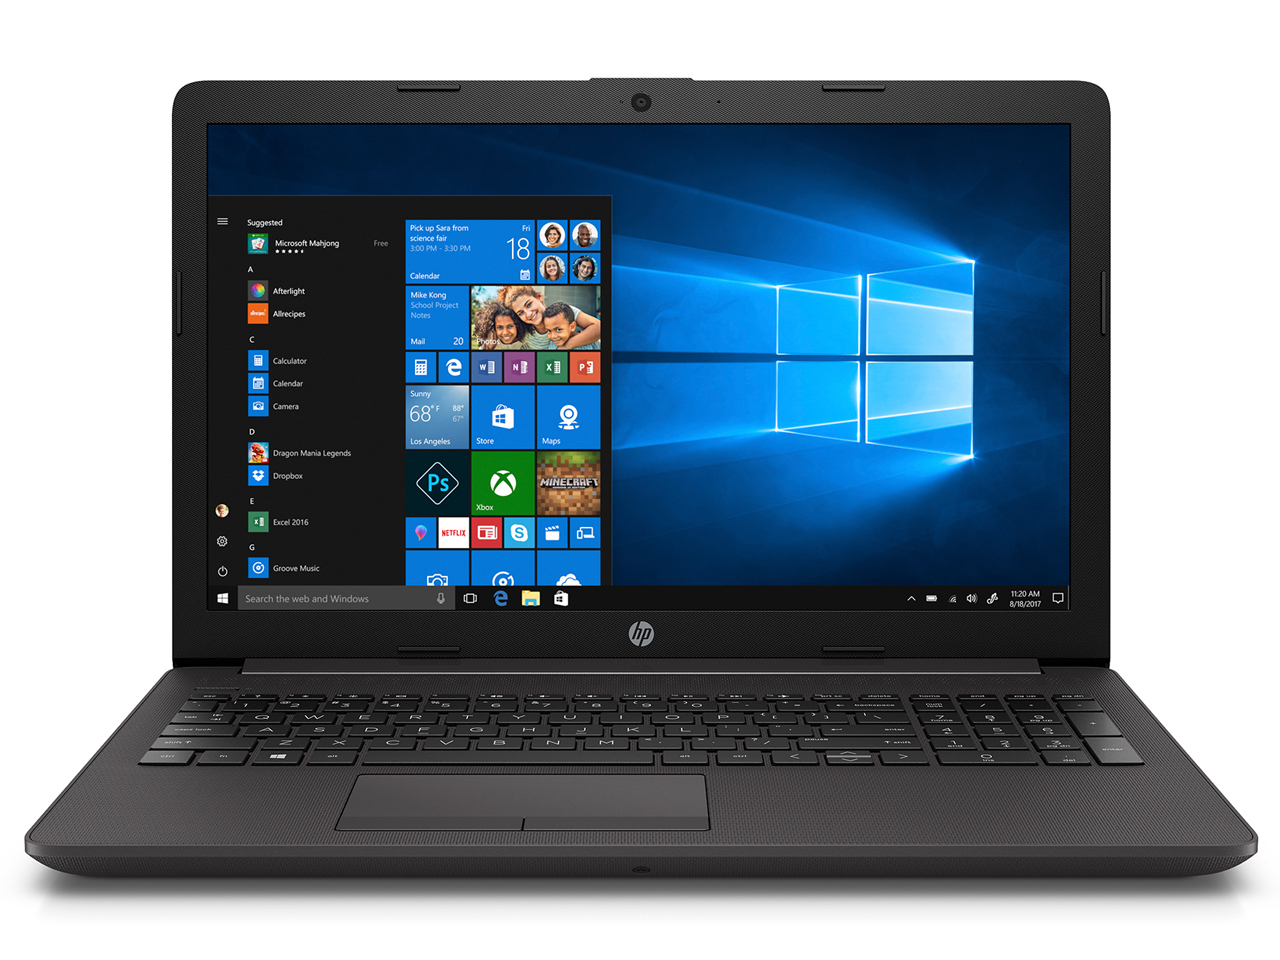 価格.com - HP 250 G7/CT Notebook PC スタンダードノート-Eモデル の製品画像